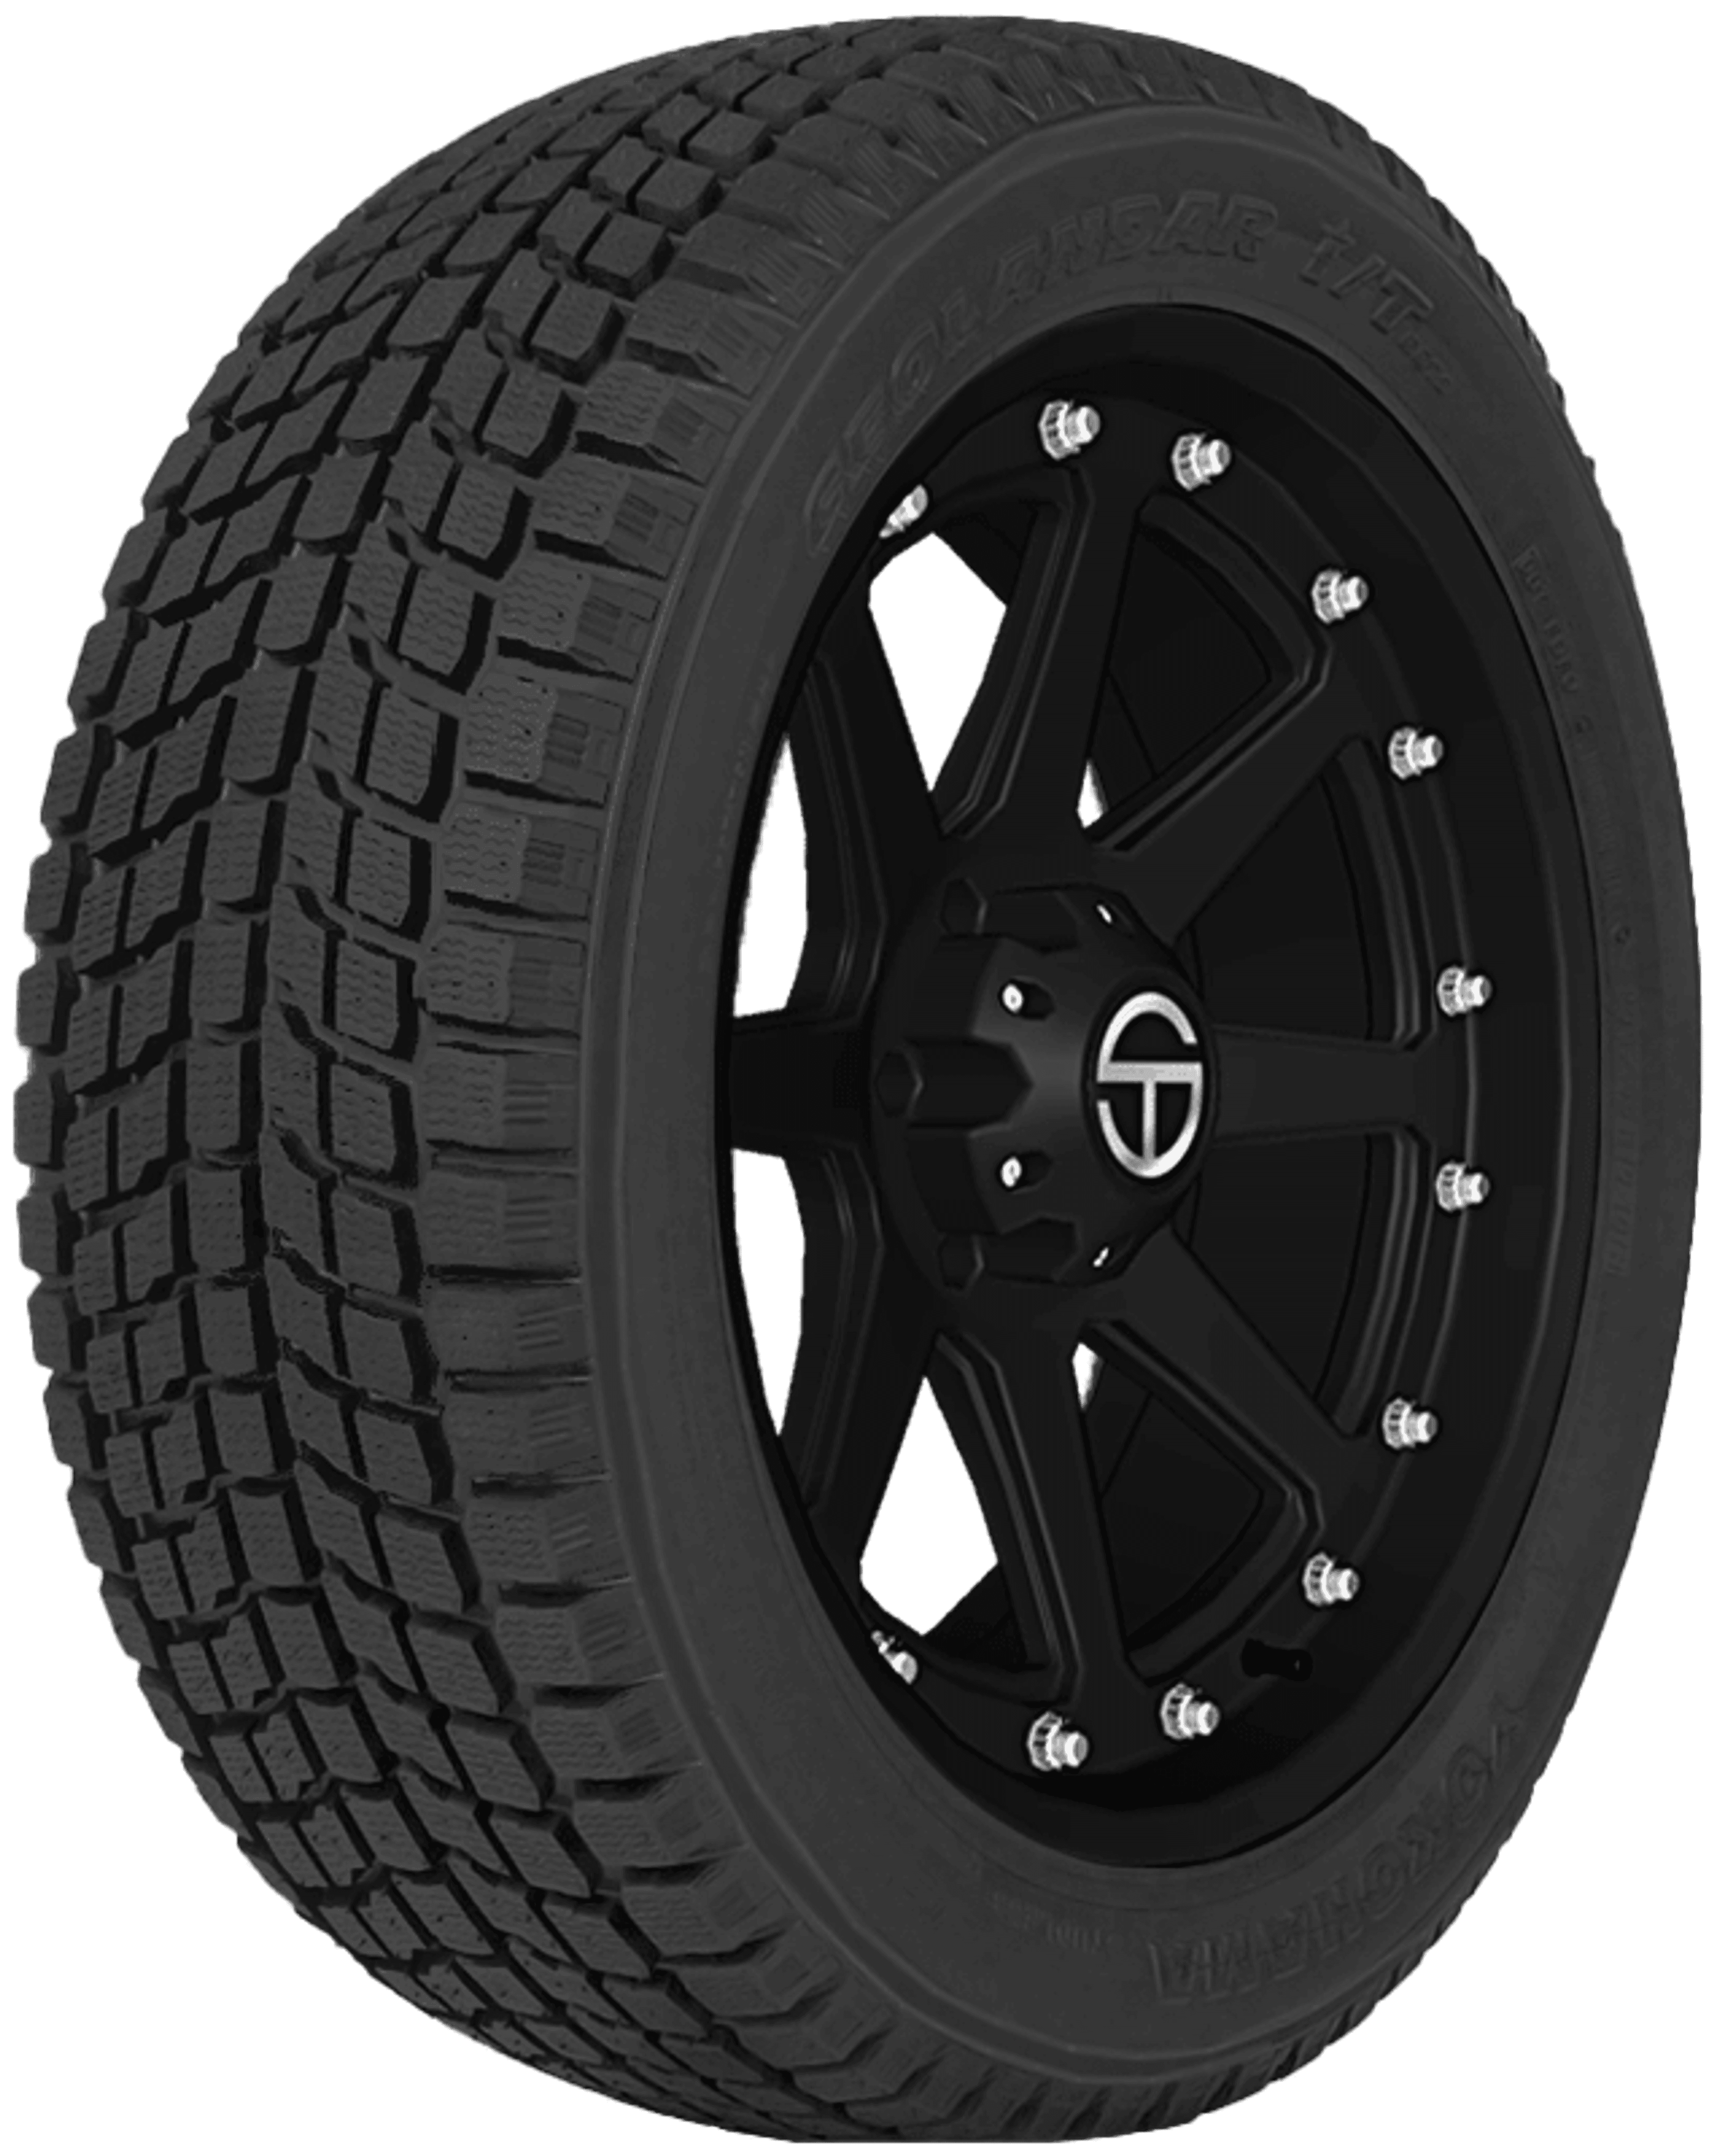 Buy Yokohama Geolandar i/T G072 Tires Online | SimpleTire